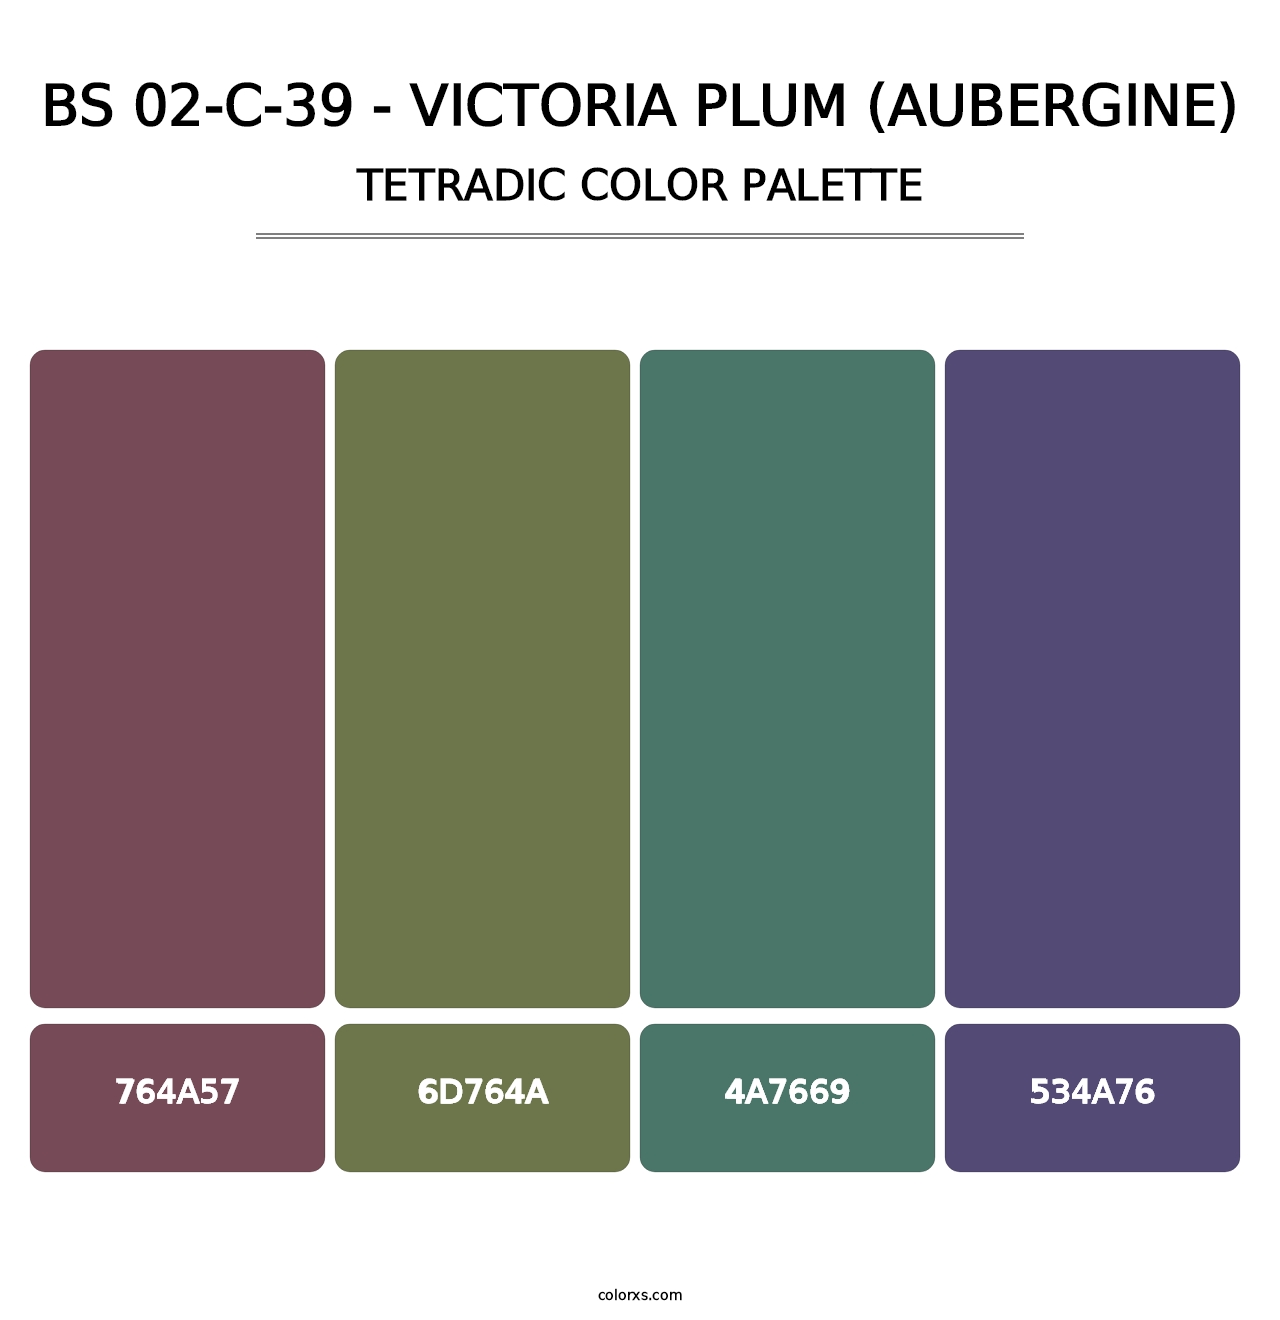 BS 02-C-39 - Victoria Plum (Aubergine) - Tetradic Color Palette